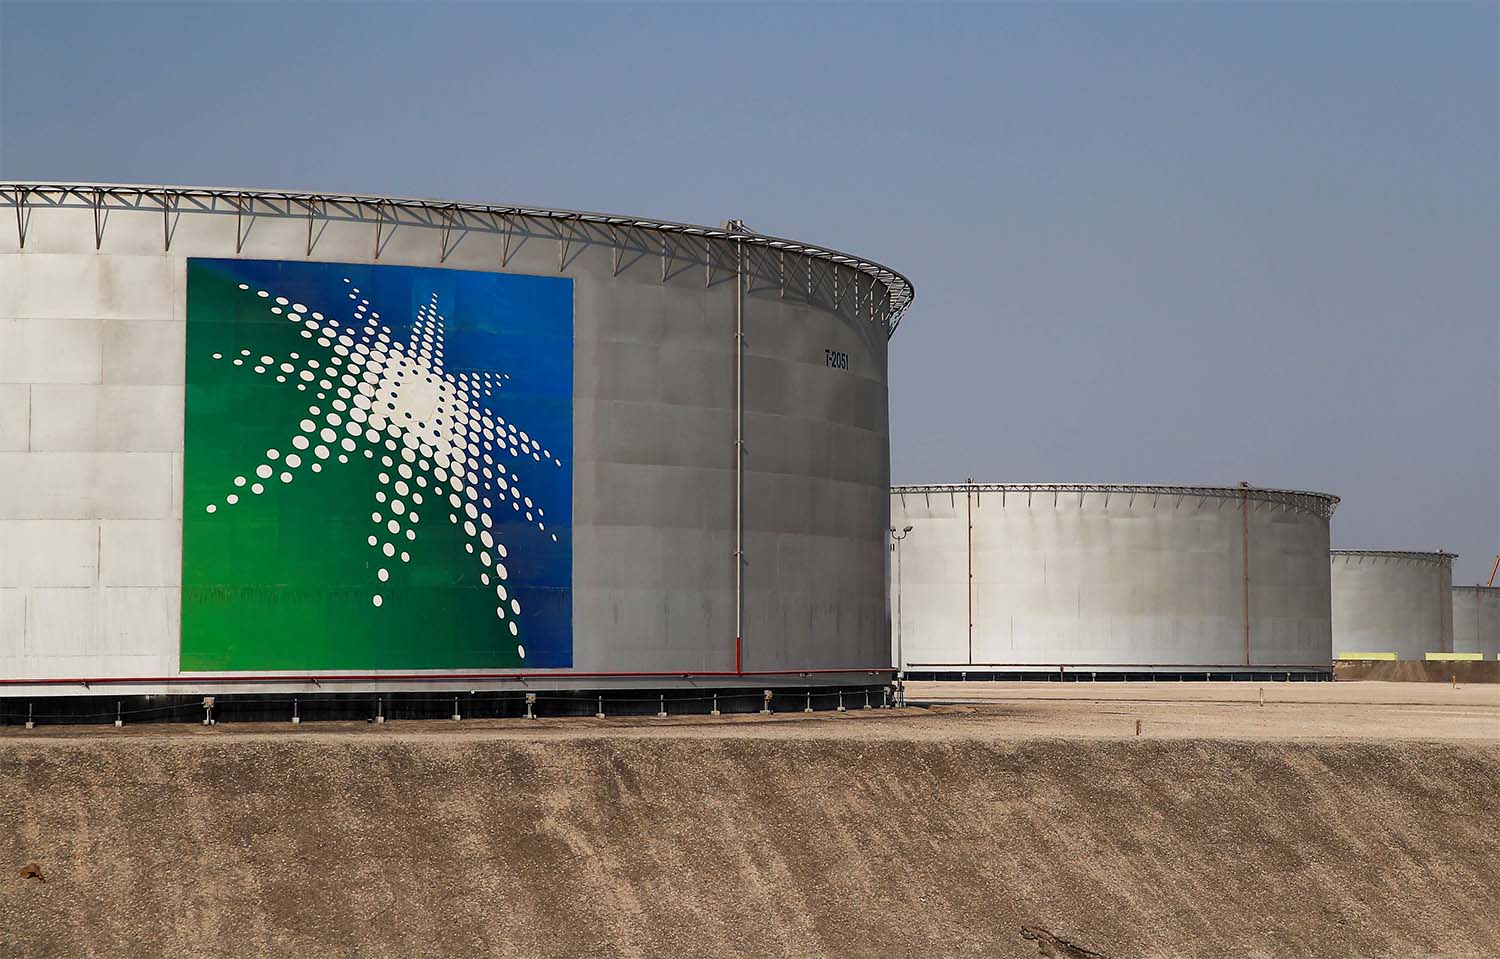 Branded oil tanks at Saudi Aramco oil facility in Abqaiq, Saudi Arabia 